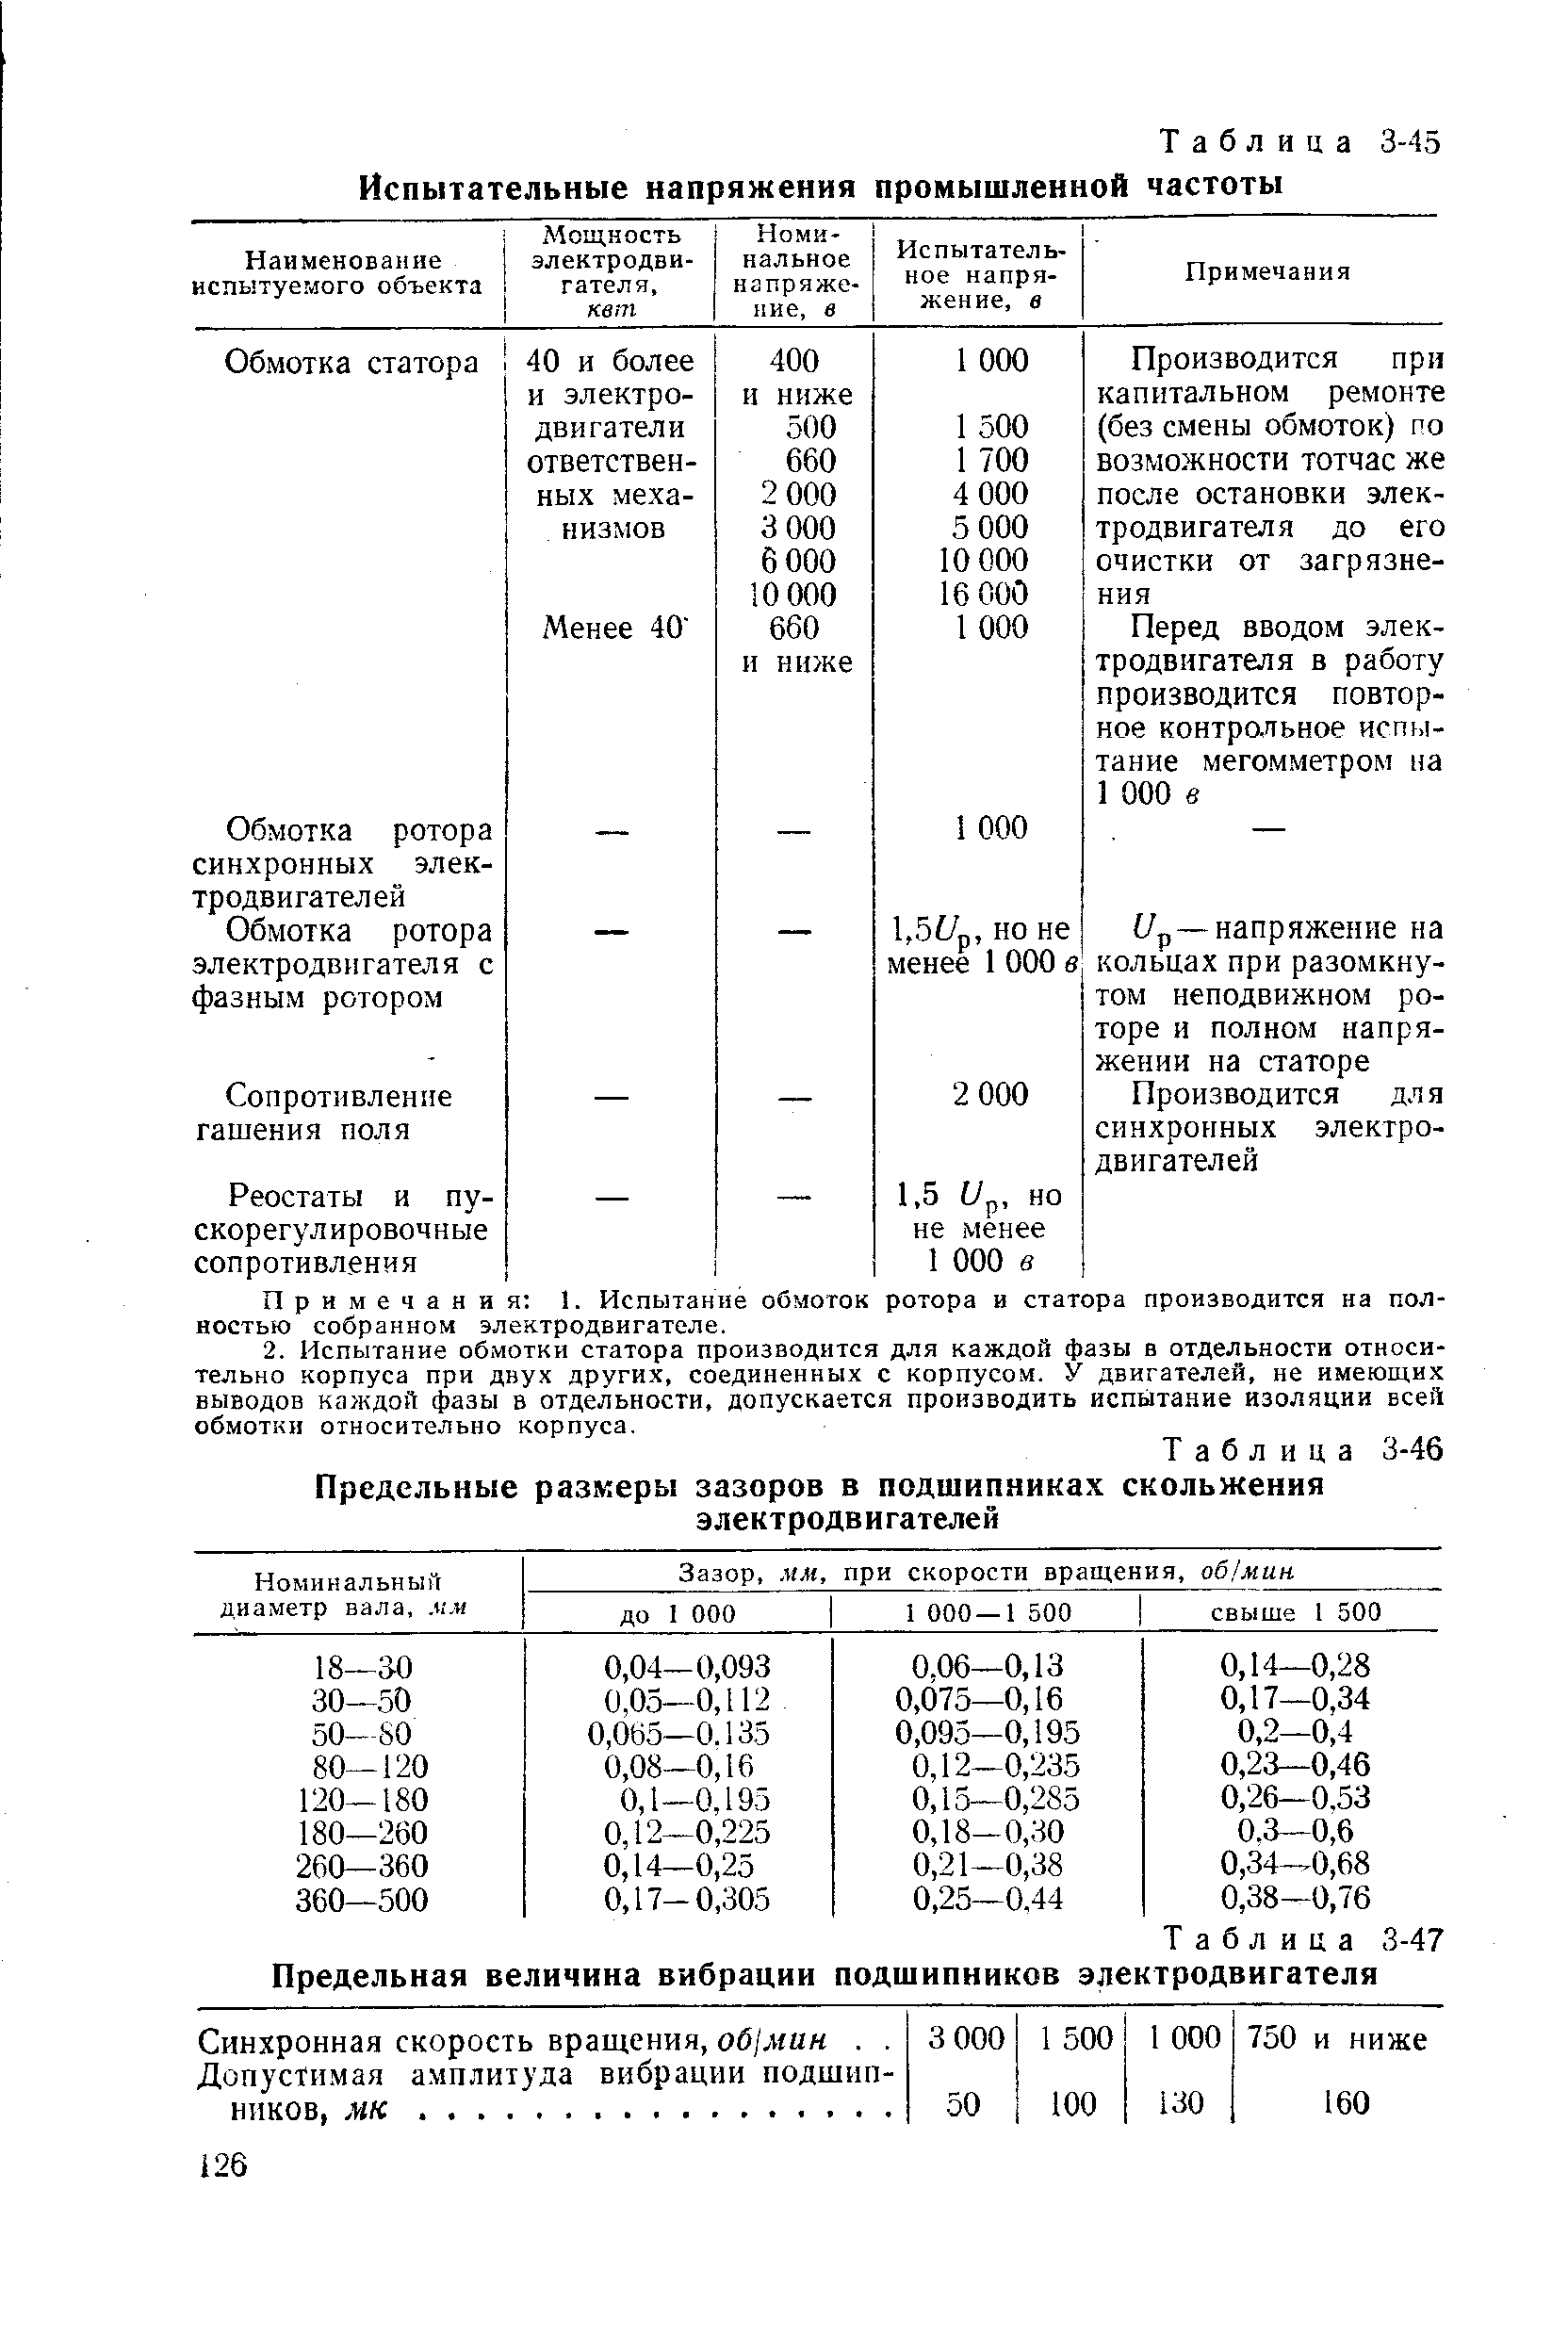 Таблица 3-47 <a href="/info/35059">Предельная величина</a> вибрации подшипников электродвигателя
